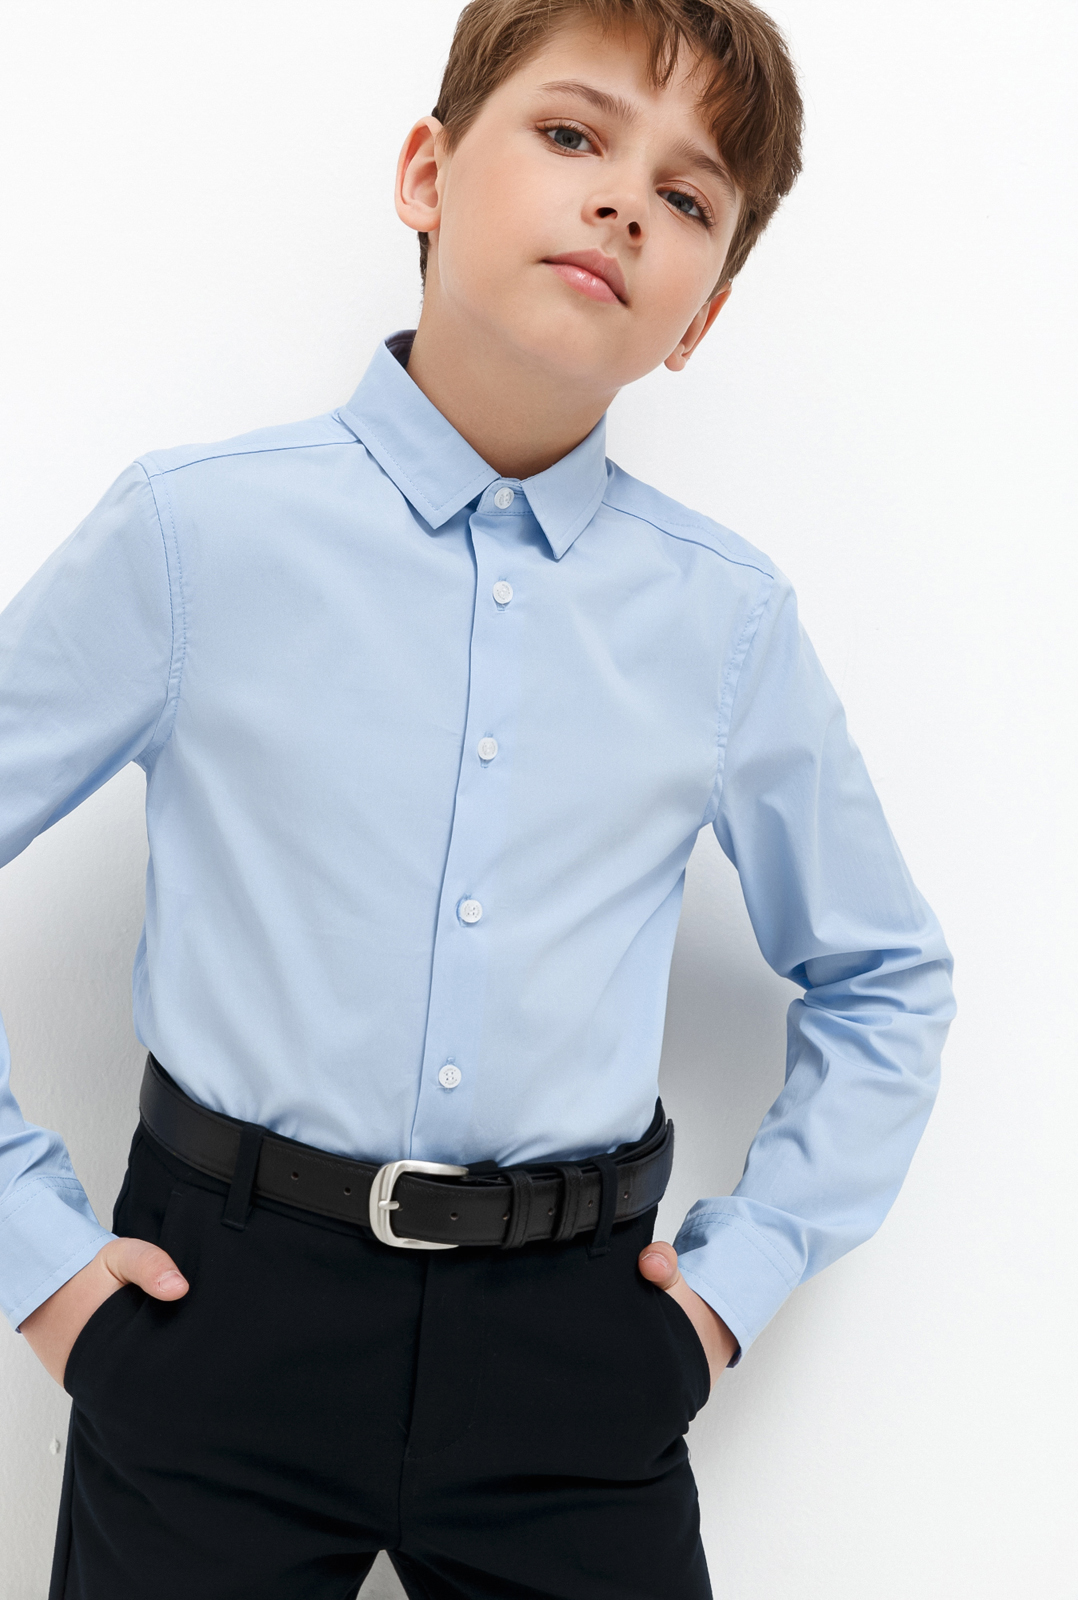 Рубашка для мальчика Acoola Houston, цвет: голубой. 20140280033_400. Размер 134